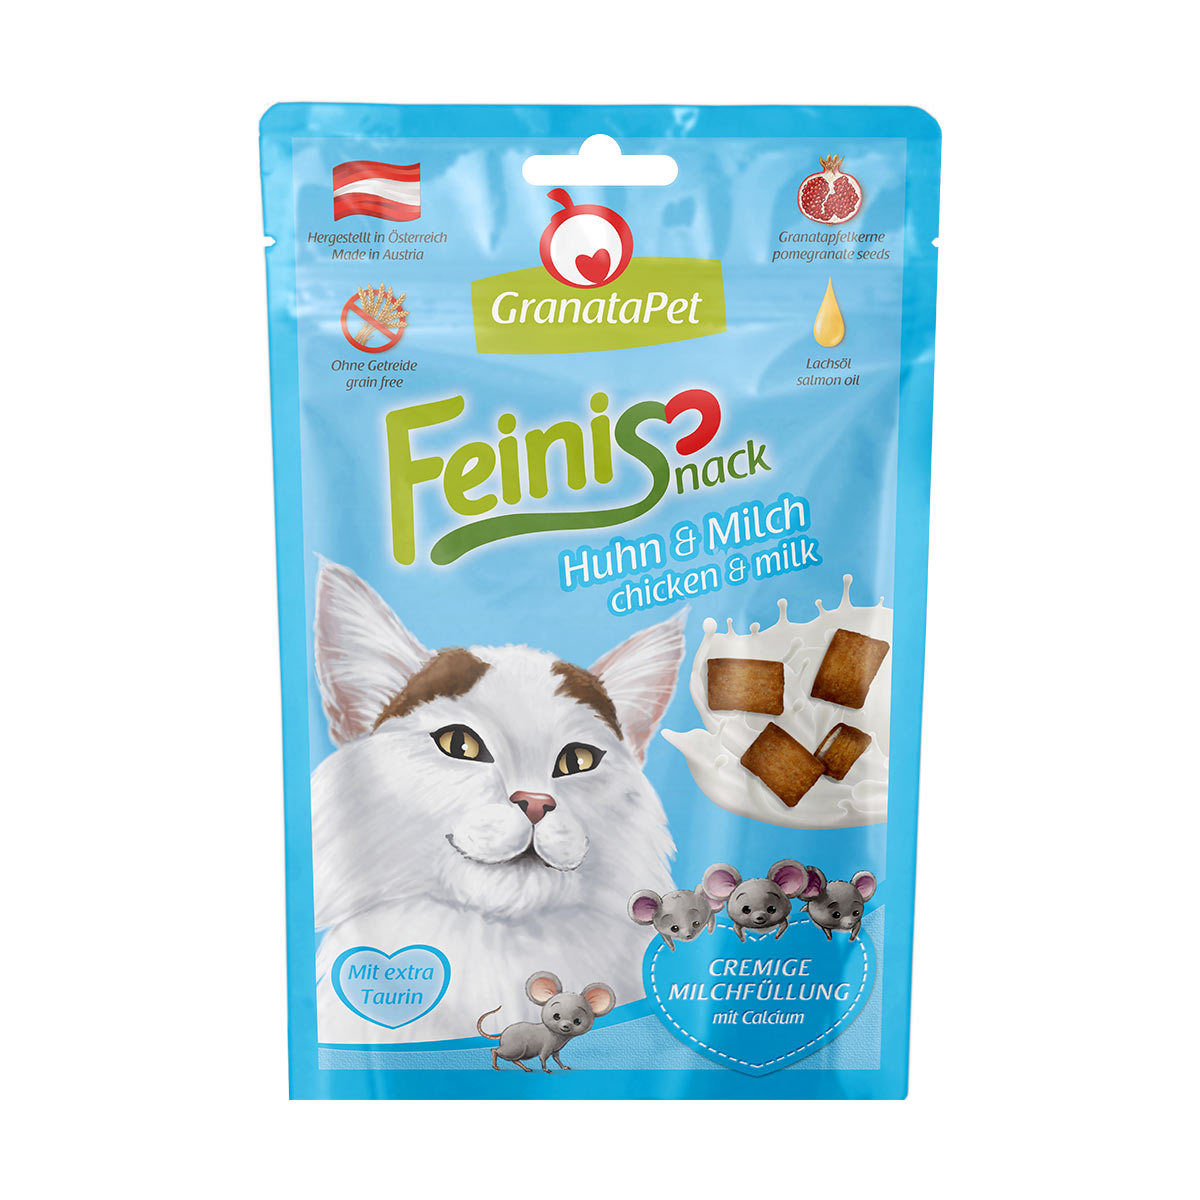 GranataPet pro kočky – FeiniSnack kuře a mléko, 50 g